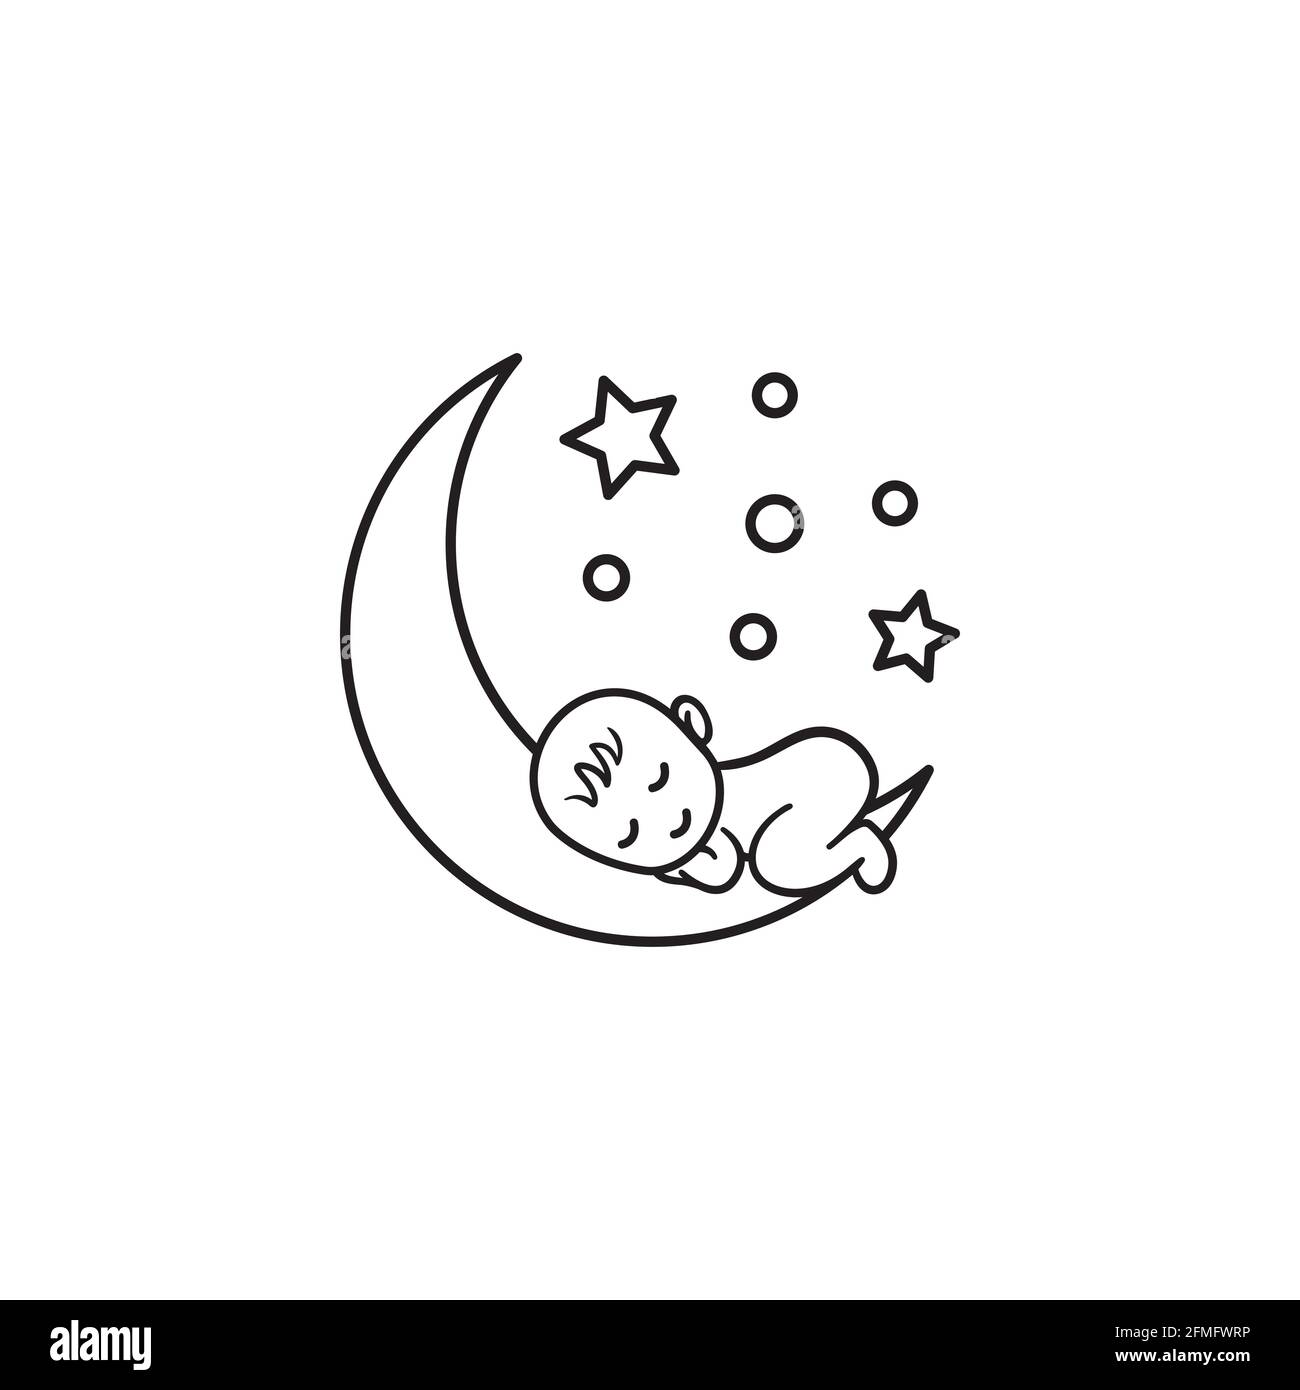 The Baby Sleeps On A Moon Baby Sleeping On Moon Sweet Dream